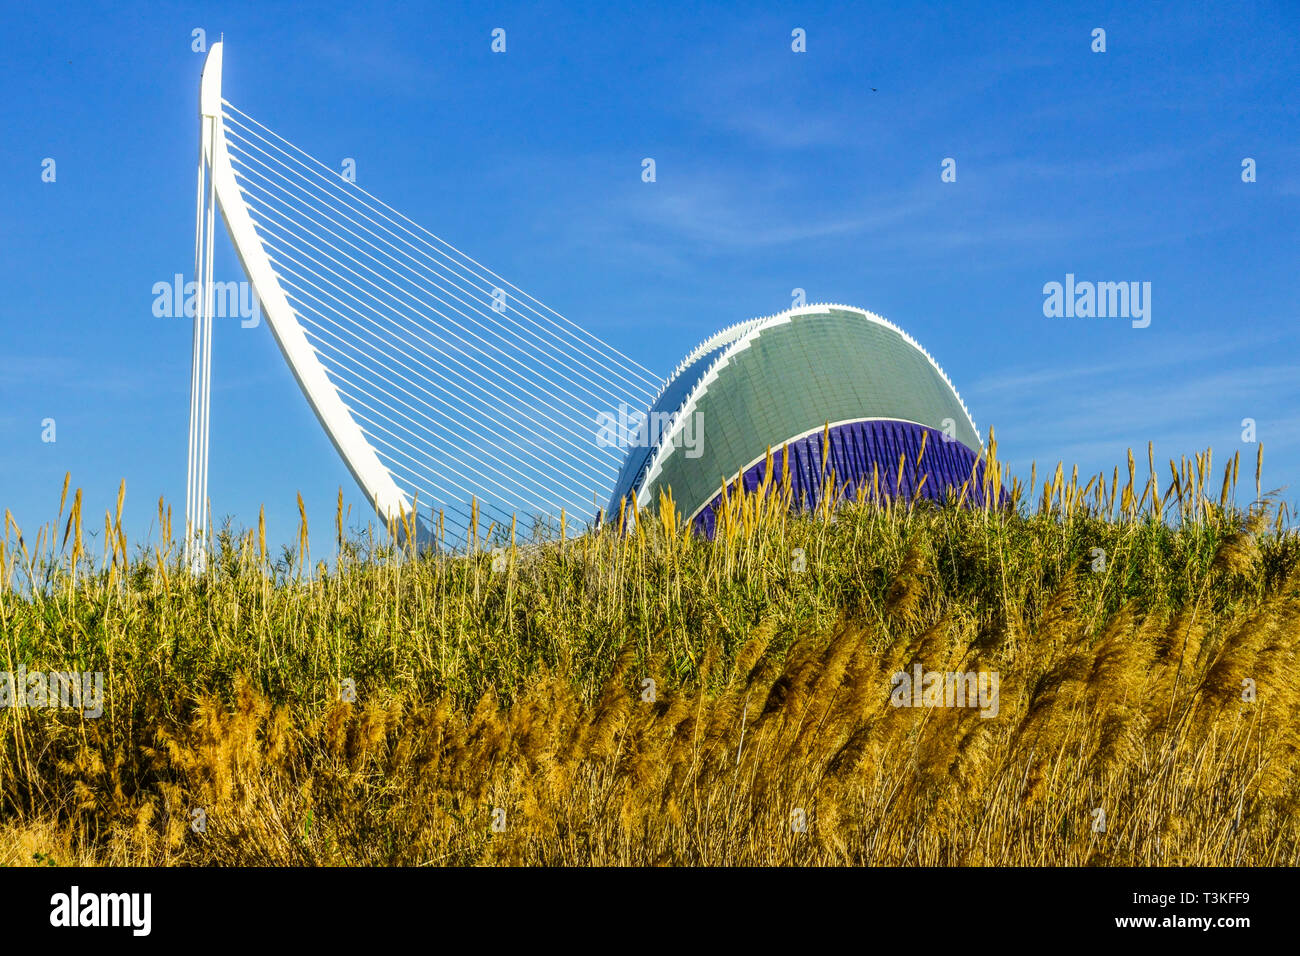 Riesenschilf, Donax-Pflanze von Arundo, Europa Spanien Valencia Stadt der Künste und Wissenschaft Agora, Calatrava, moderne Architektur Stockfoto